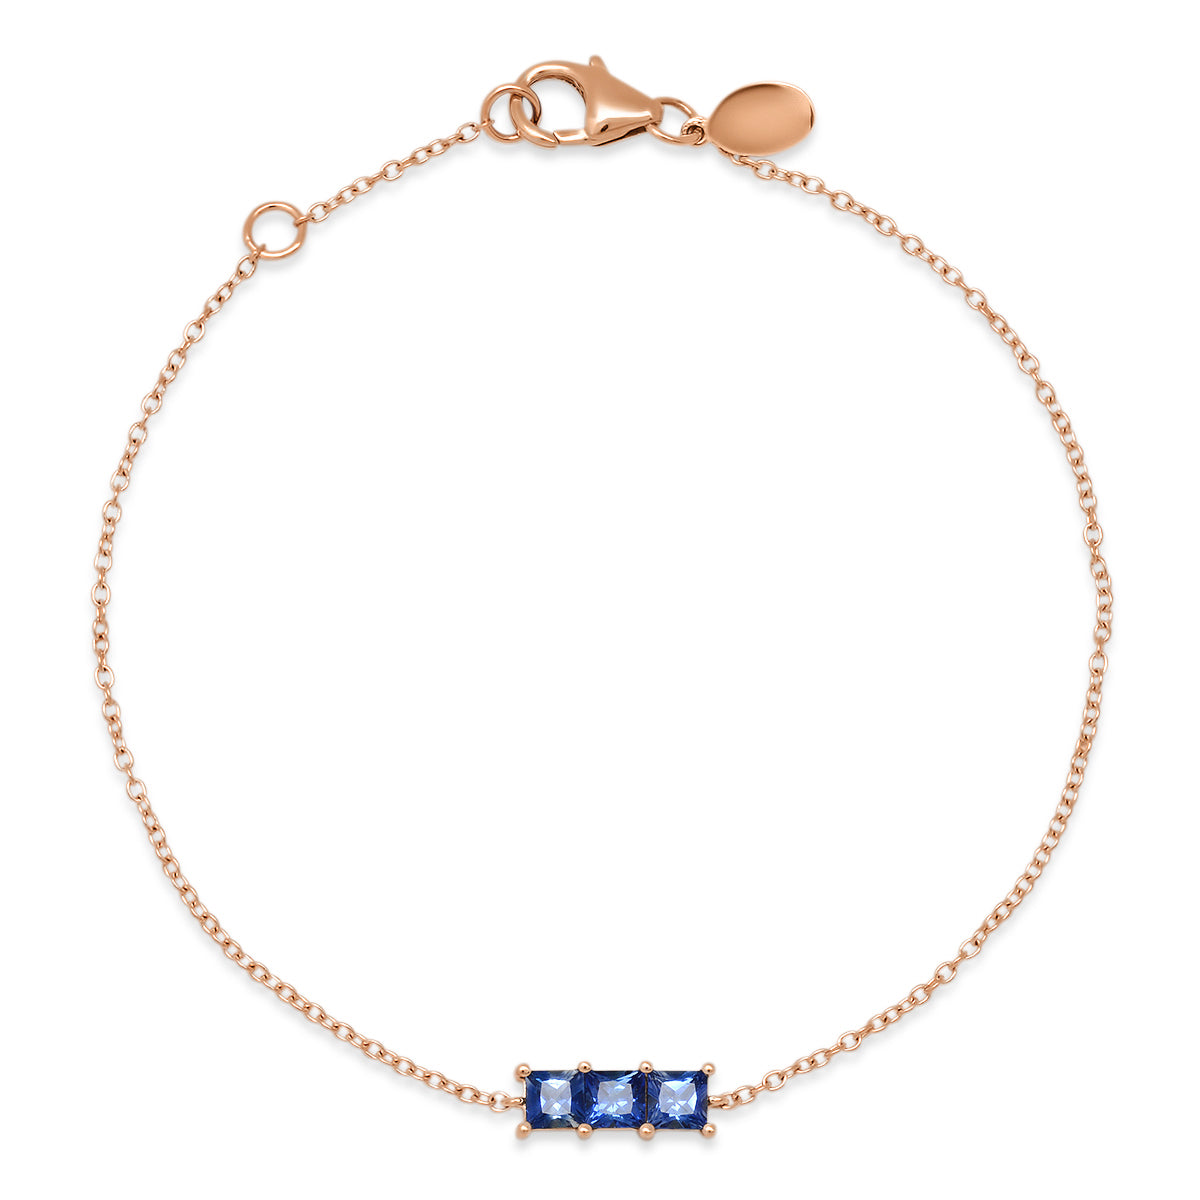 Simon G. Vintage Style Oval Cut Blue Sapphire Bracelet | Ben Garelick